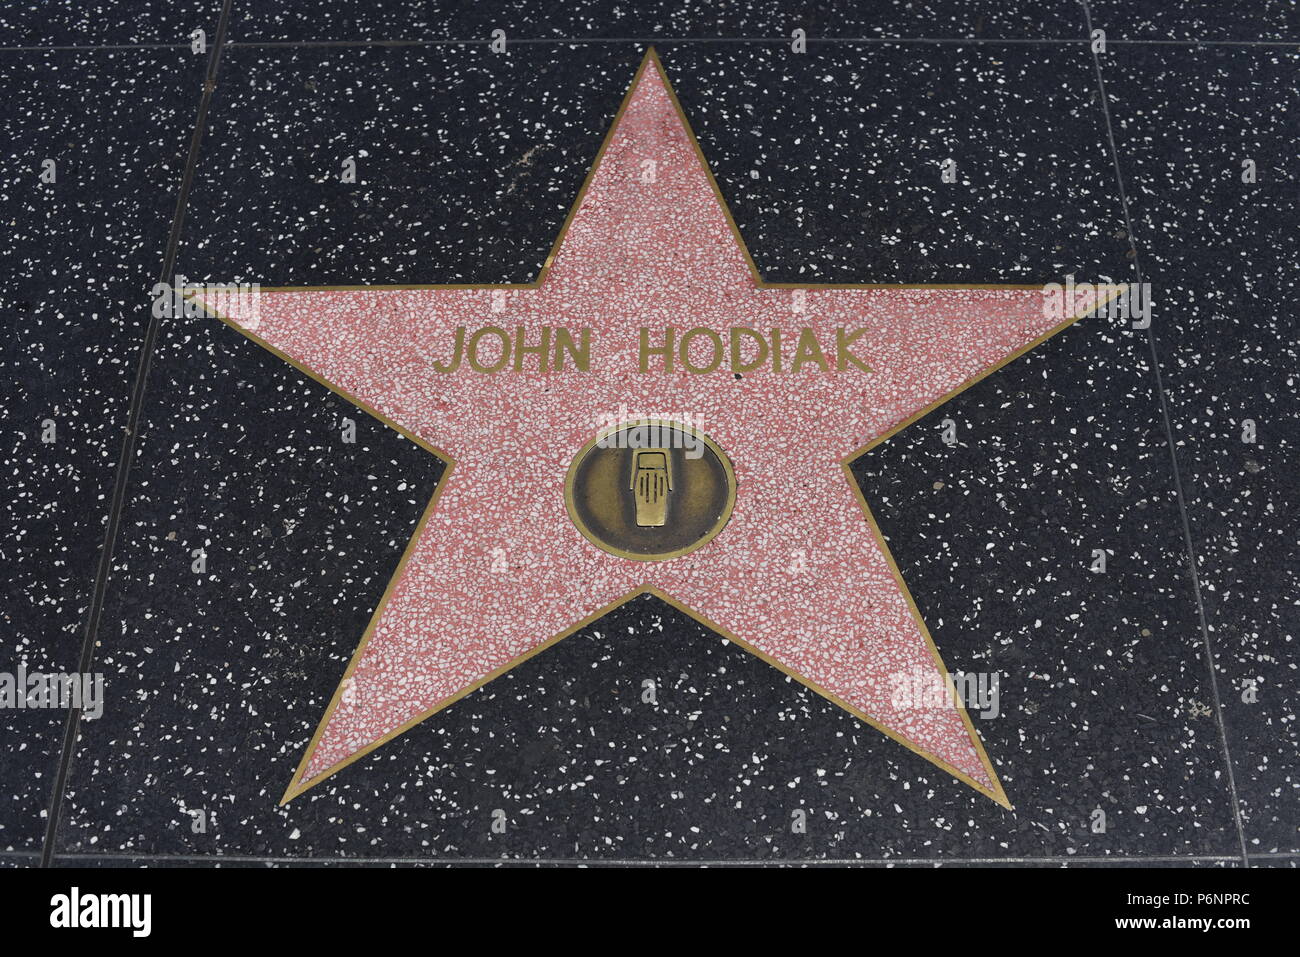 HOLLYWOOD, CA - 29 Giugno: John Hodiak stella sulla Hollywood Walk of Fame in Hollywood, la California il 29 giugno 2018. Foto Stock